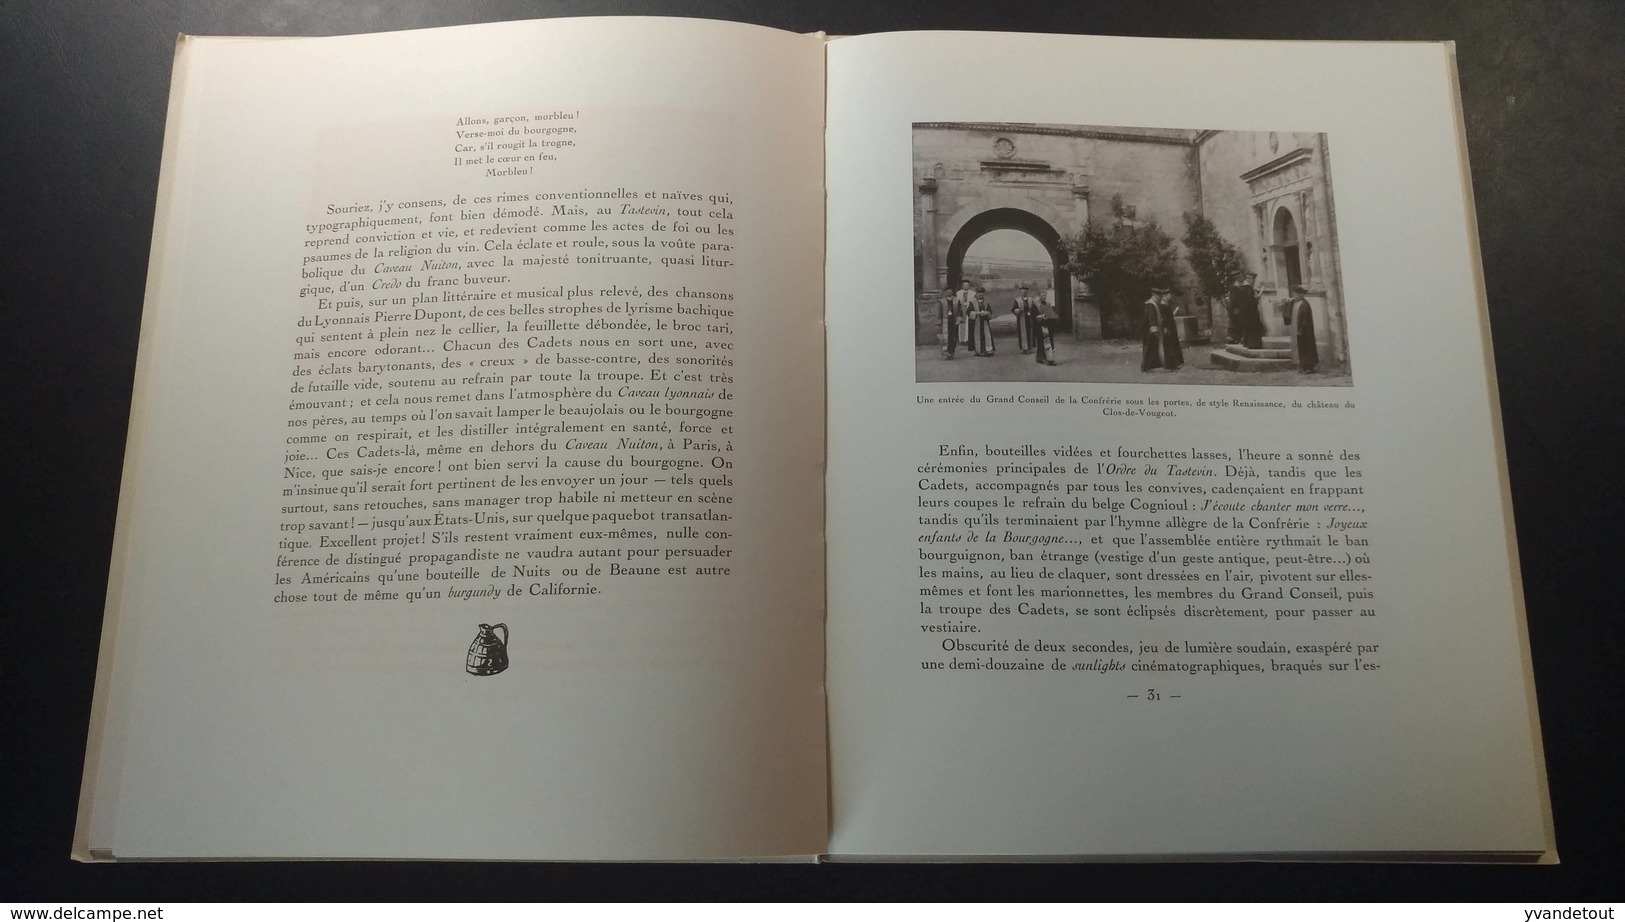 La Confrérie des Chevaliers du Tastevin. Historique - Scènes - Tableaux. Texte de Georges Rozet. Bourgogne. Vin 1937